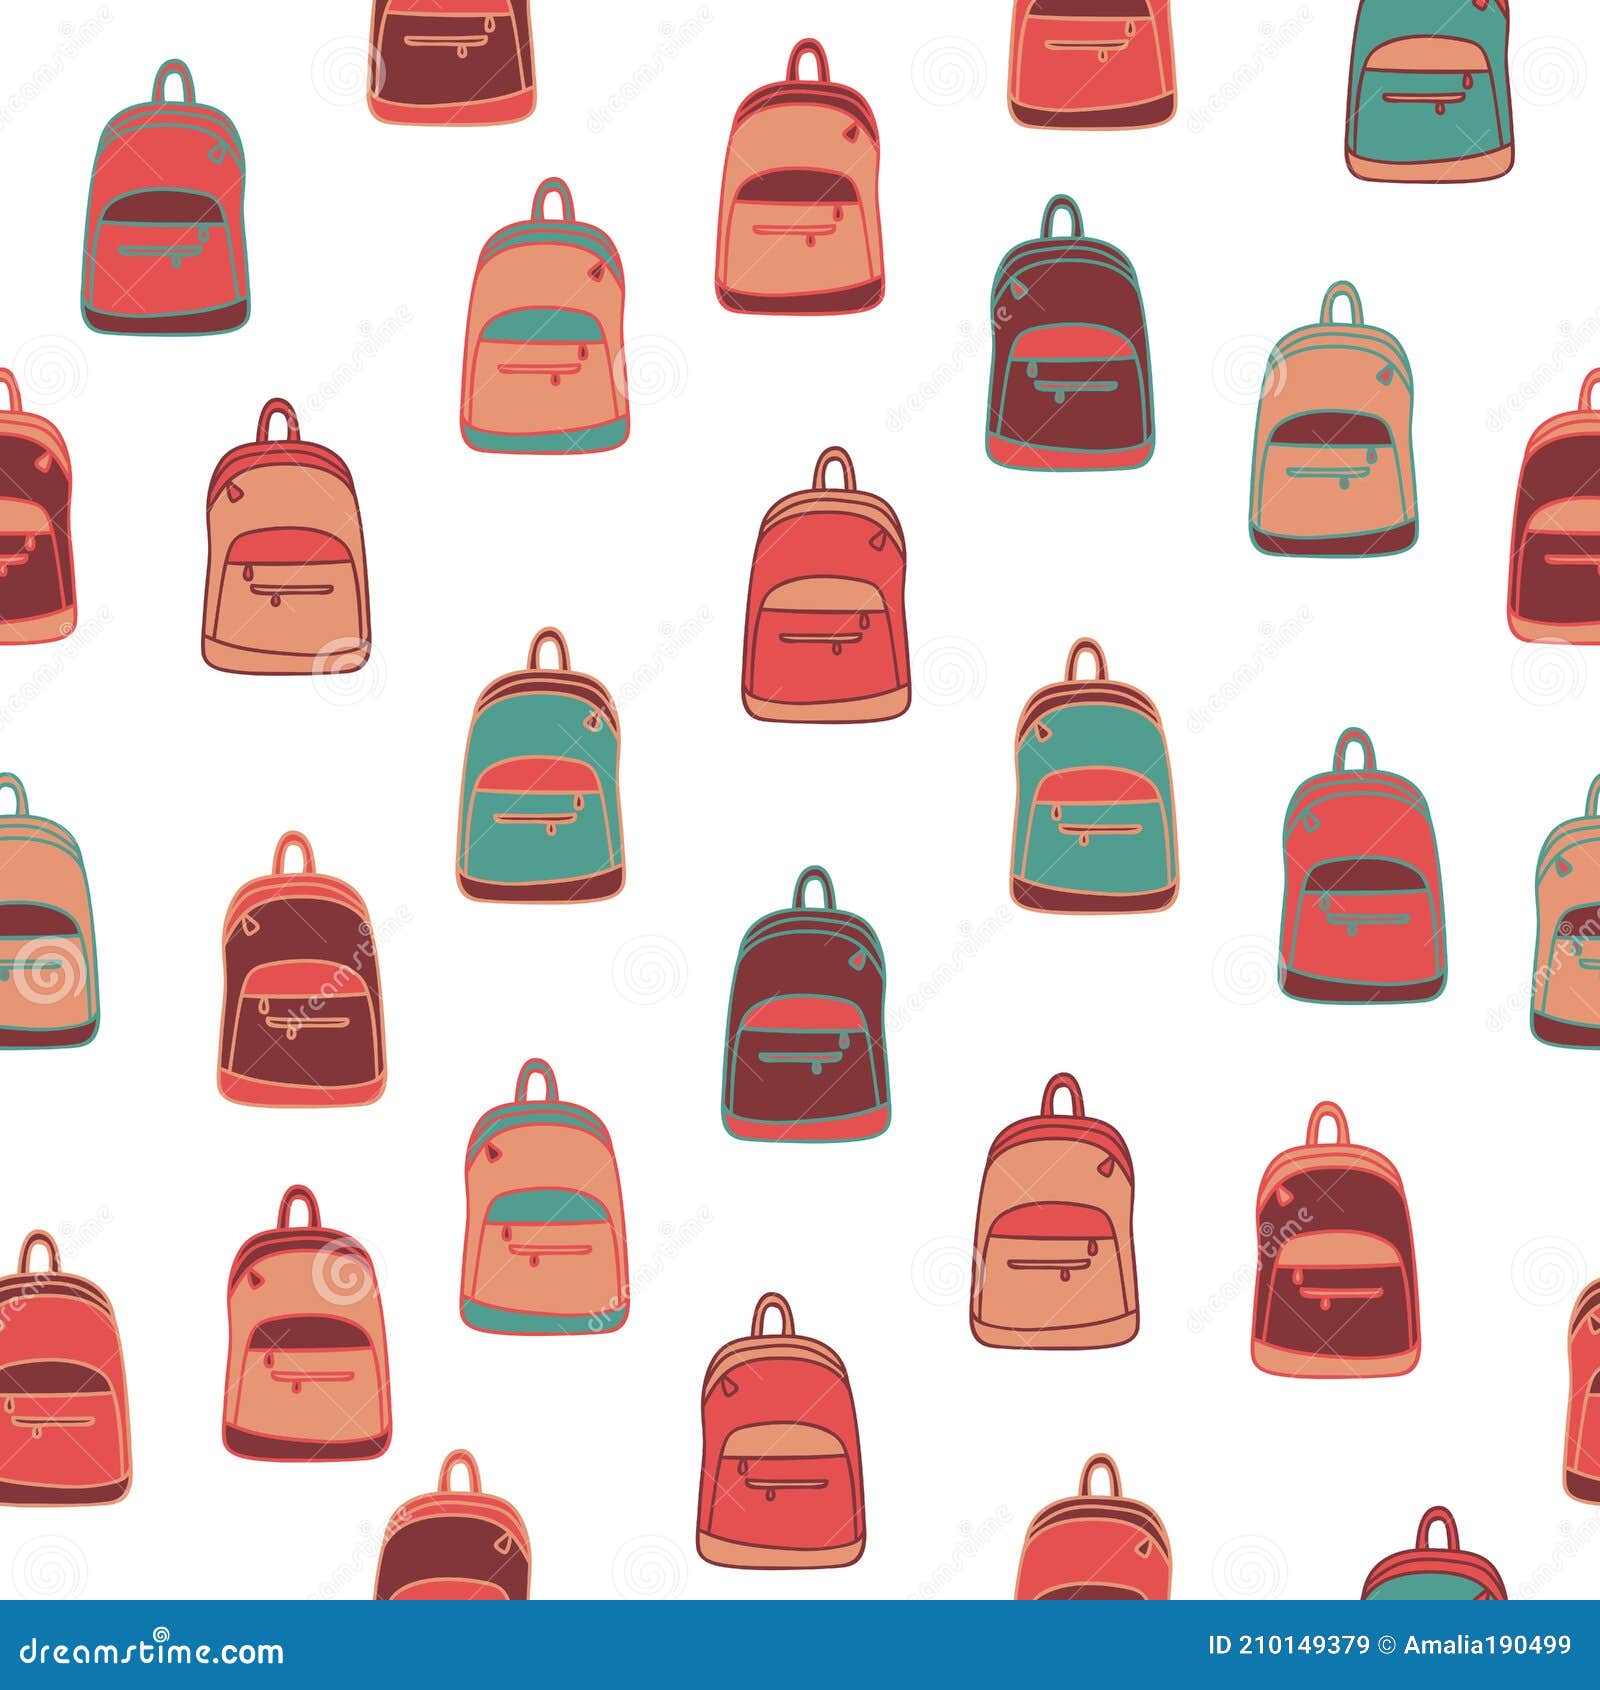 Plain Backpack Stock Illustrations – 245 Plain Backpack Stock  Illustrations, Vectors & Clipart - Dreamstime